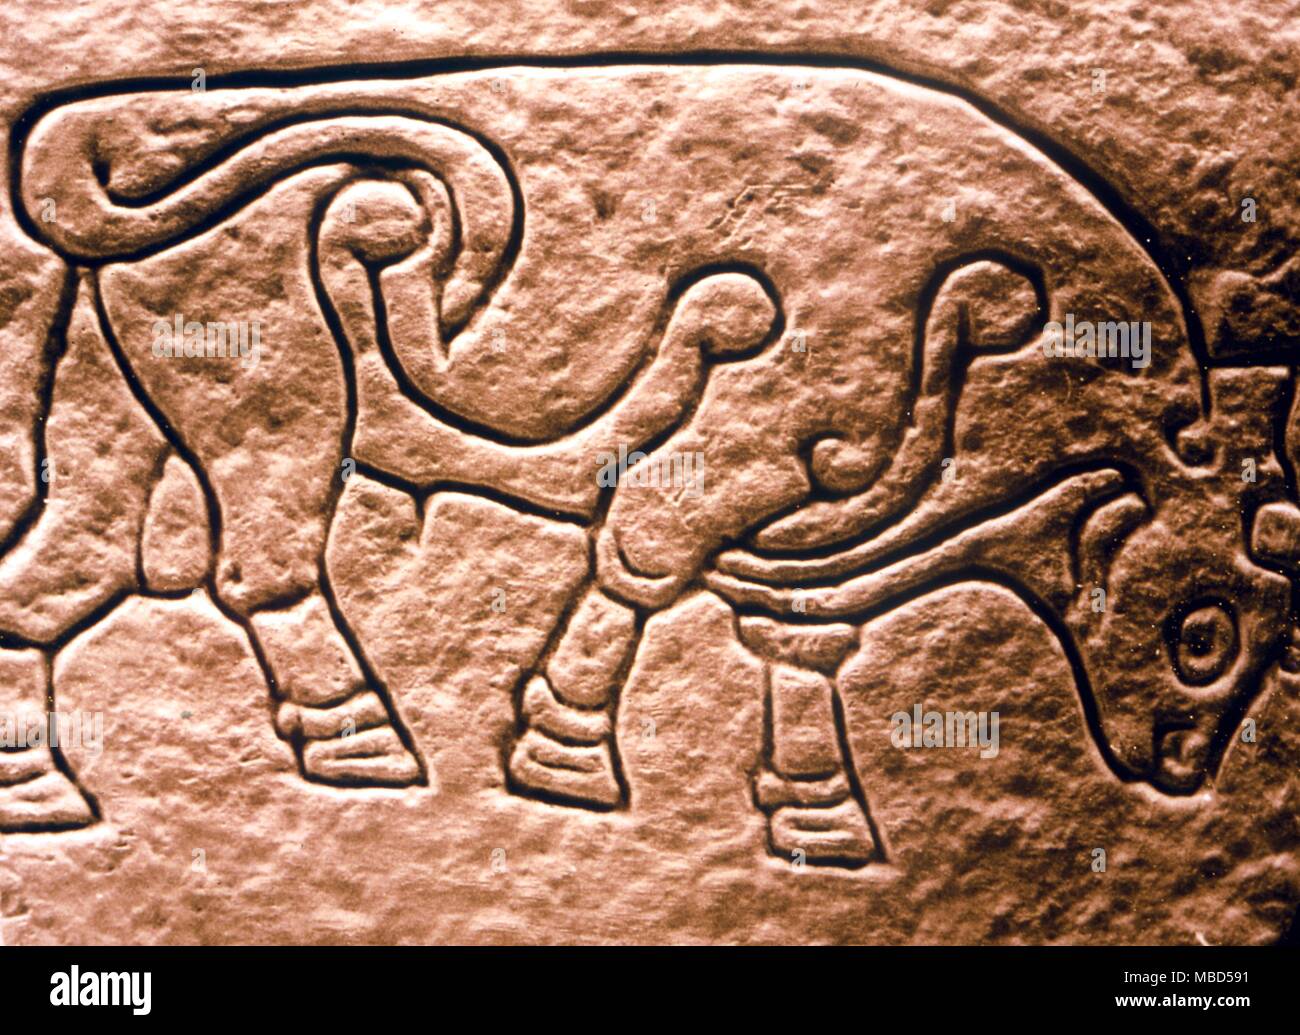 Piktischen. Die burghead Stier, ein aus dem 8. Jahrhundert piktischen Carving während der Ausgrabung des antiken Brunnen gefunden. Stockfoto